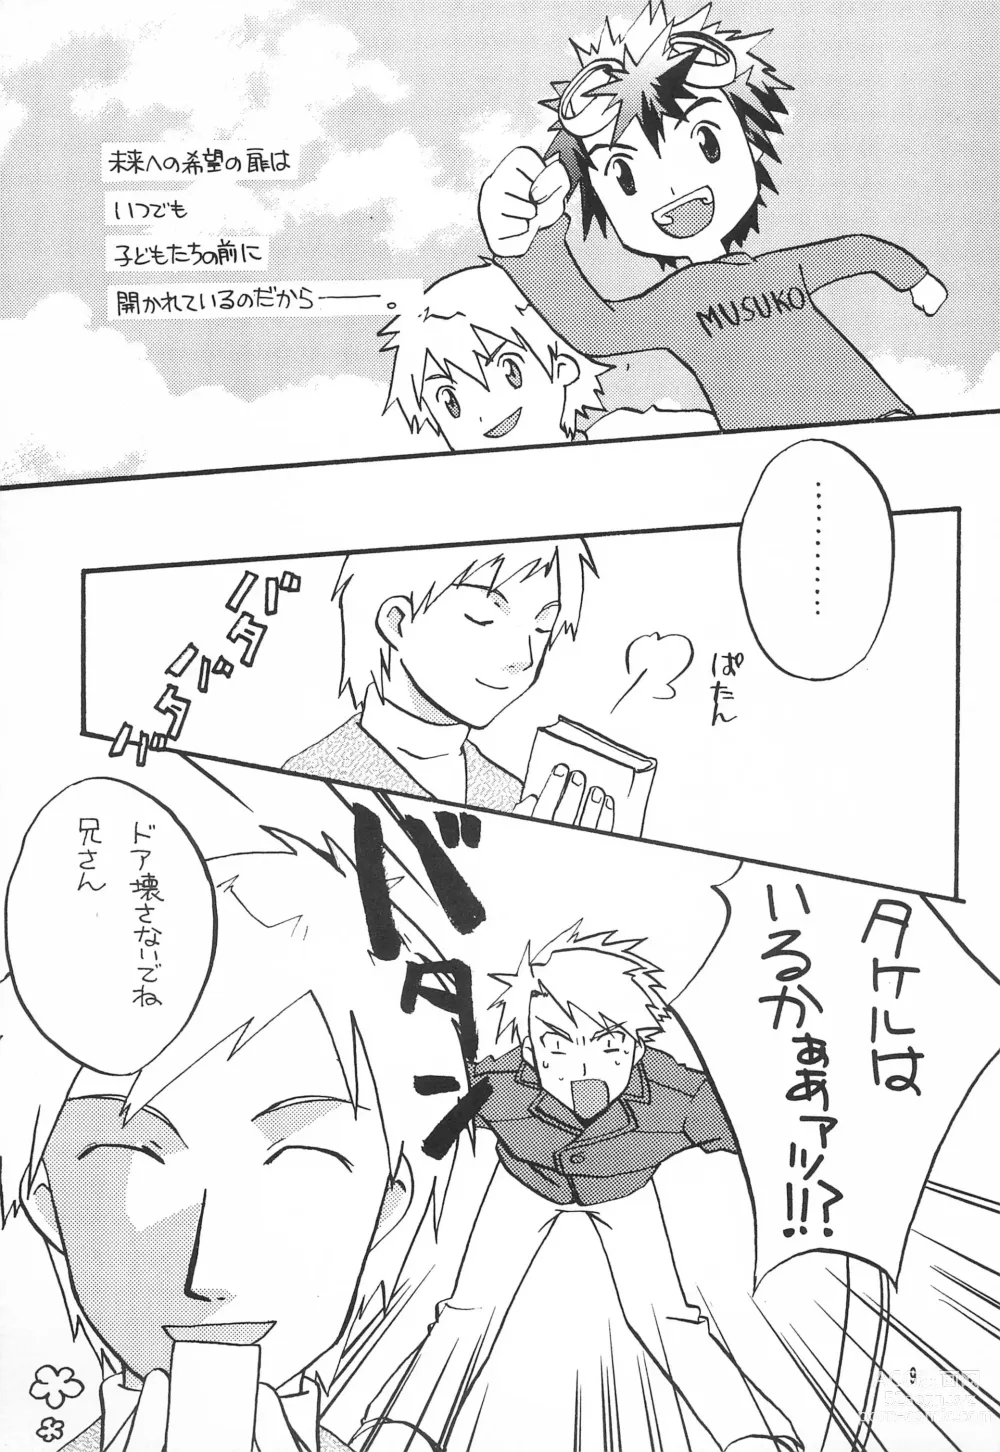 Page 11 of doujinshi Utsukushiki Samazama no Yume